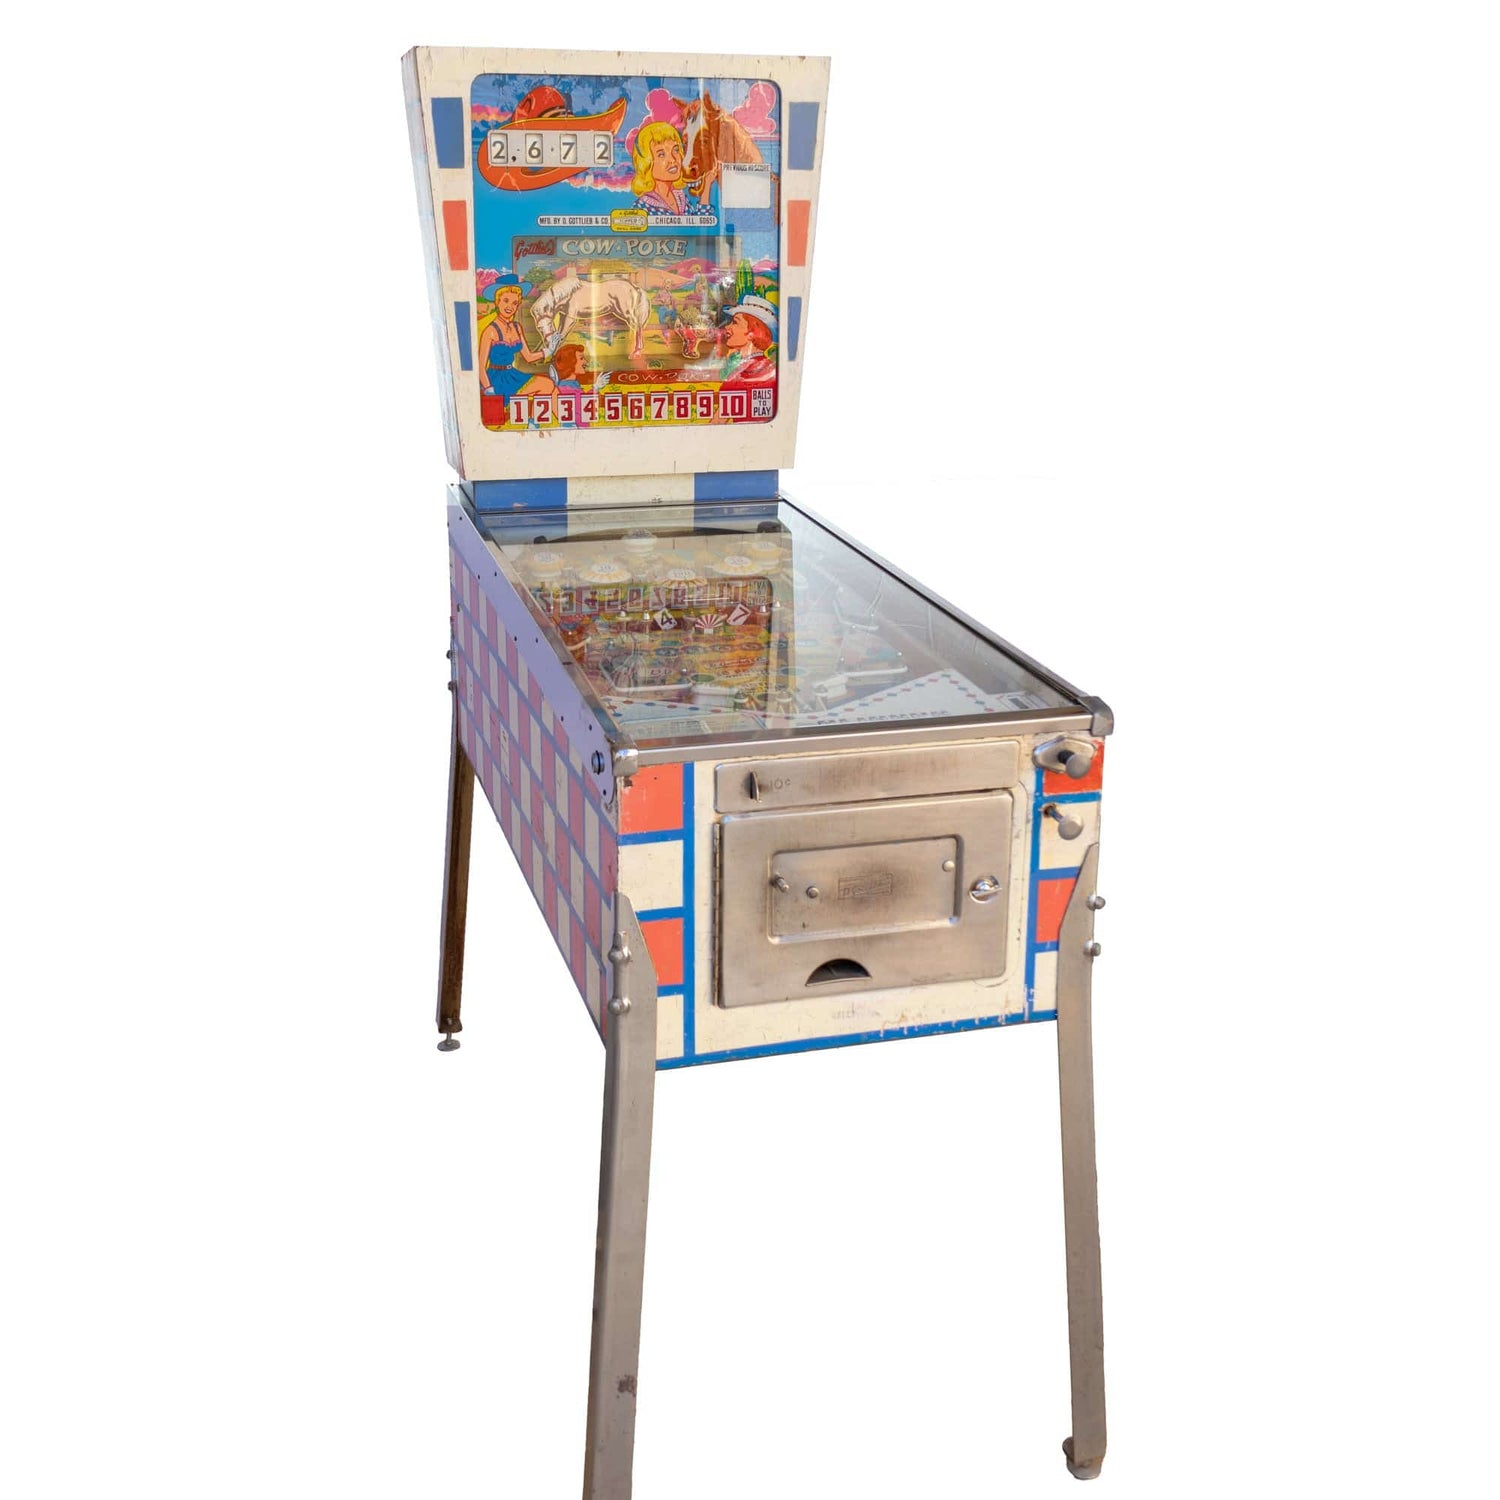 1960s Cow Poke Pinball Machine – Gold & Silver Pawn Shop